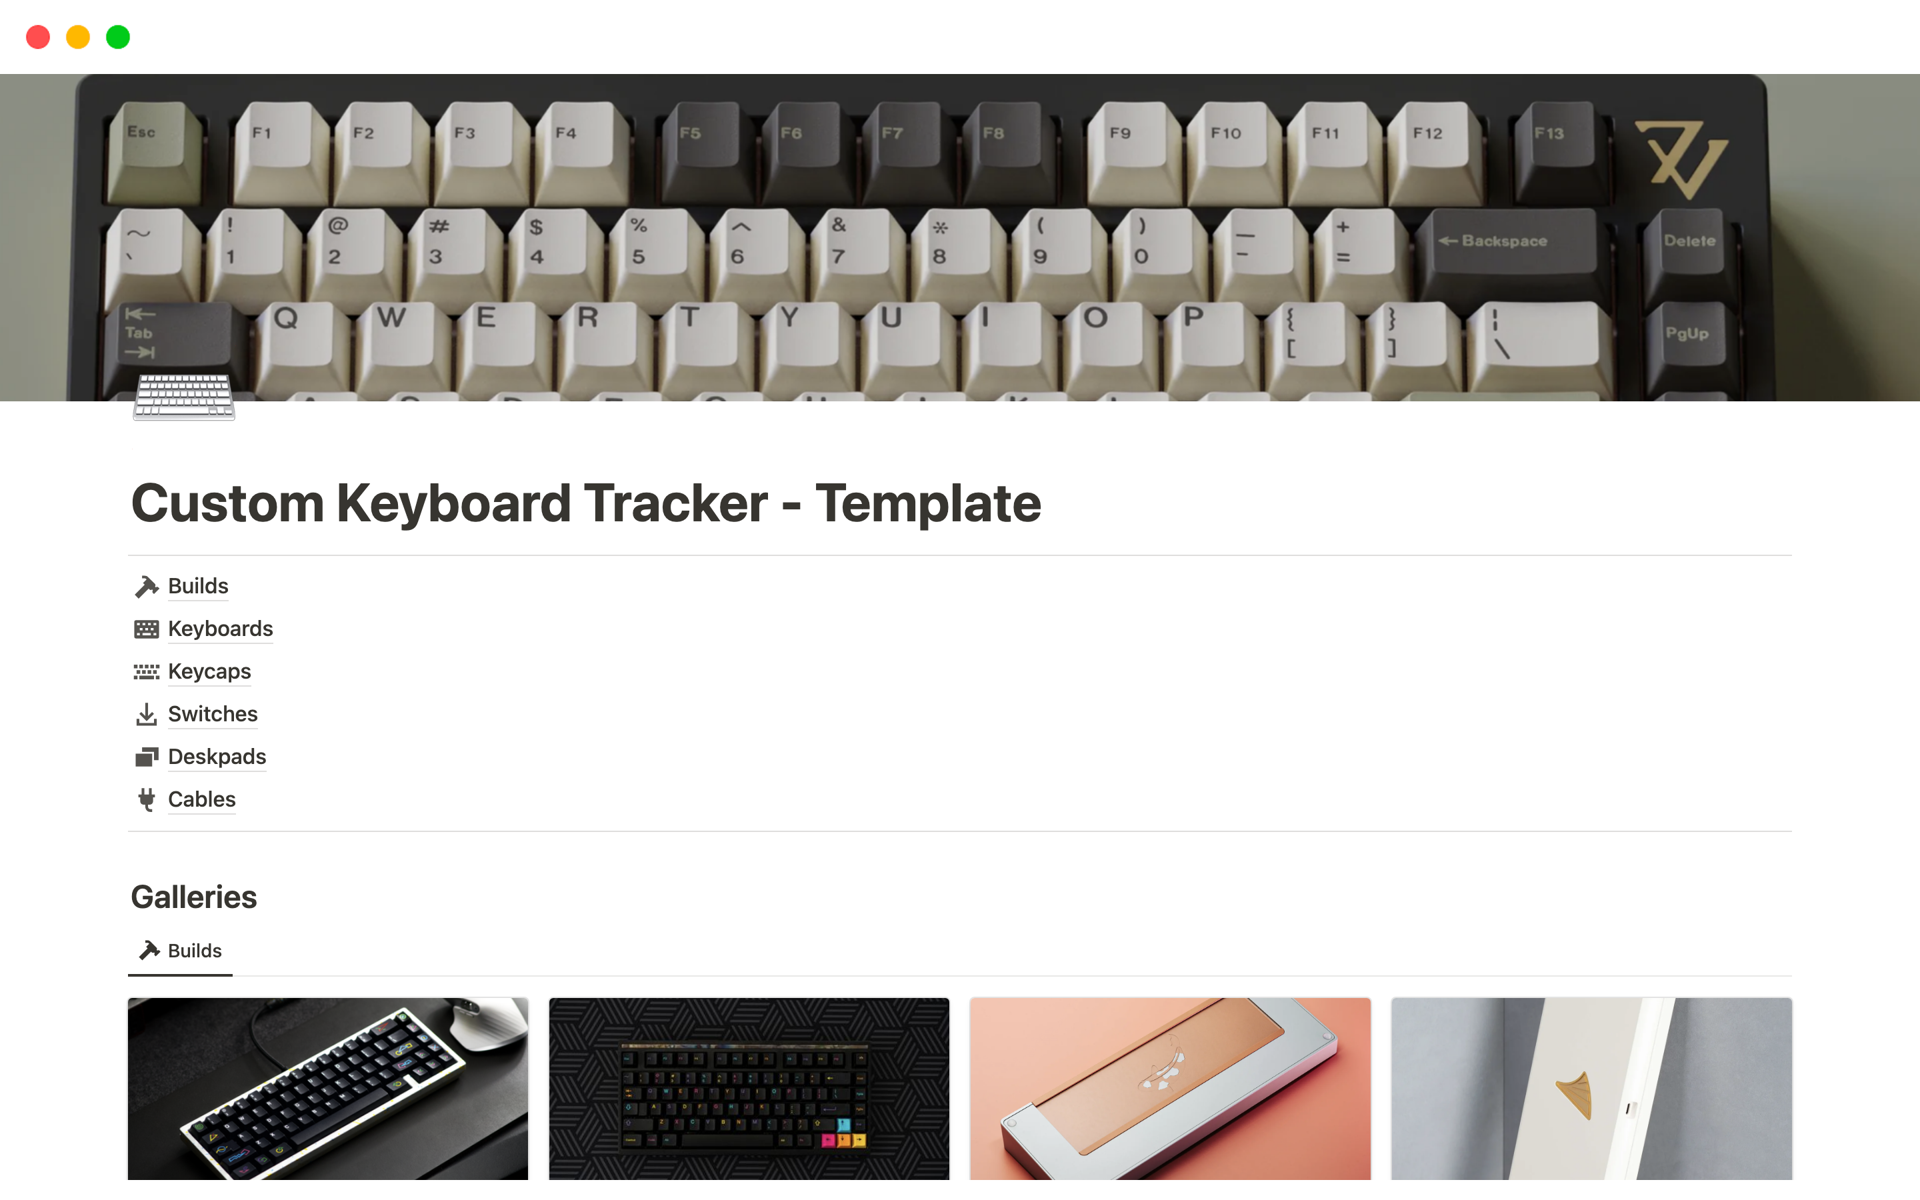 Uma prévia do modelo para Custom Keyboards Tracker